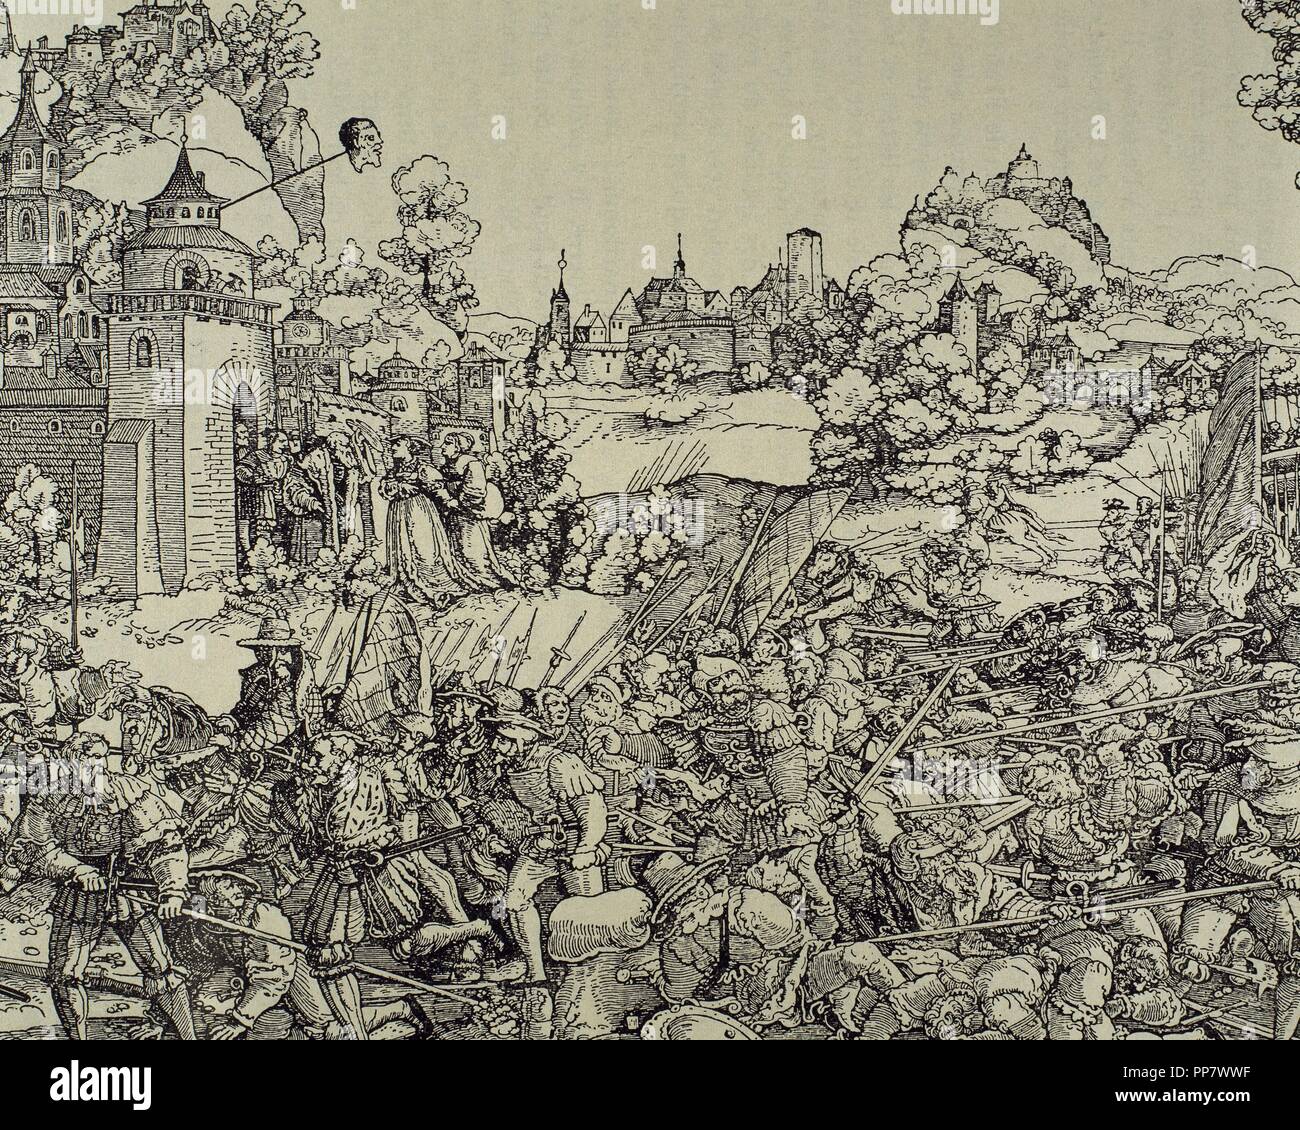 Il tedesco guerra dei contadini (1524-1525). Rivolta popolare in lingua tedesca le aree dell'Europa centrale a causa dell' aumento del potere dei capi e il peggioramento dei contadini di condizioni di vita. Incisione di orli Schenselin. Foto Stock